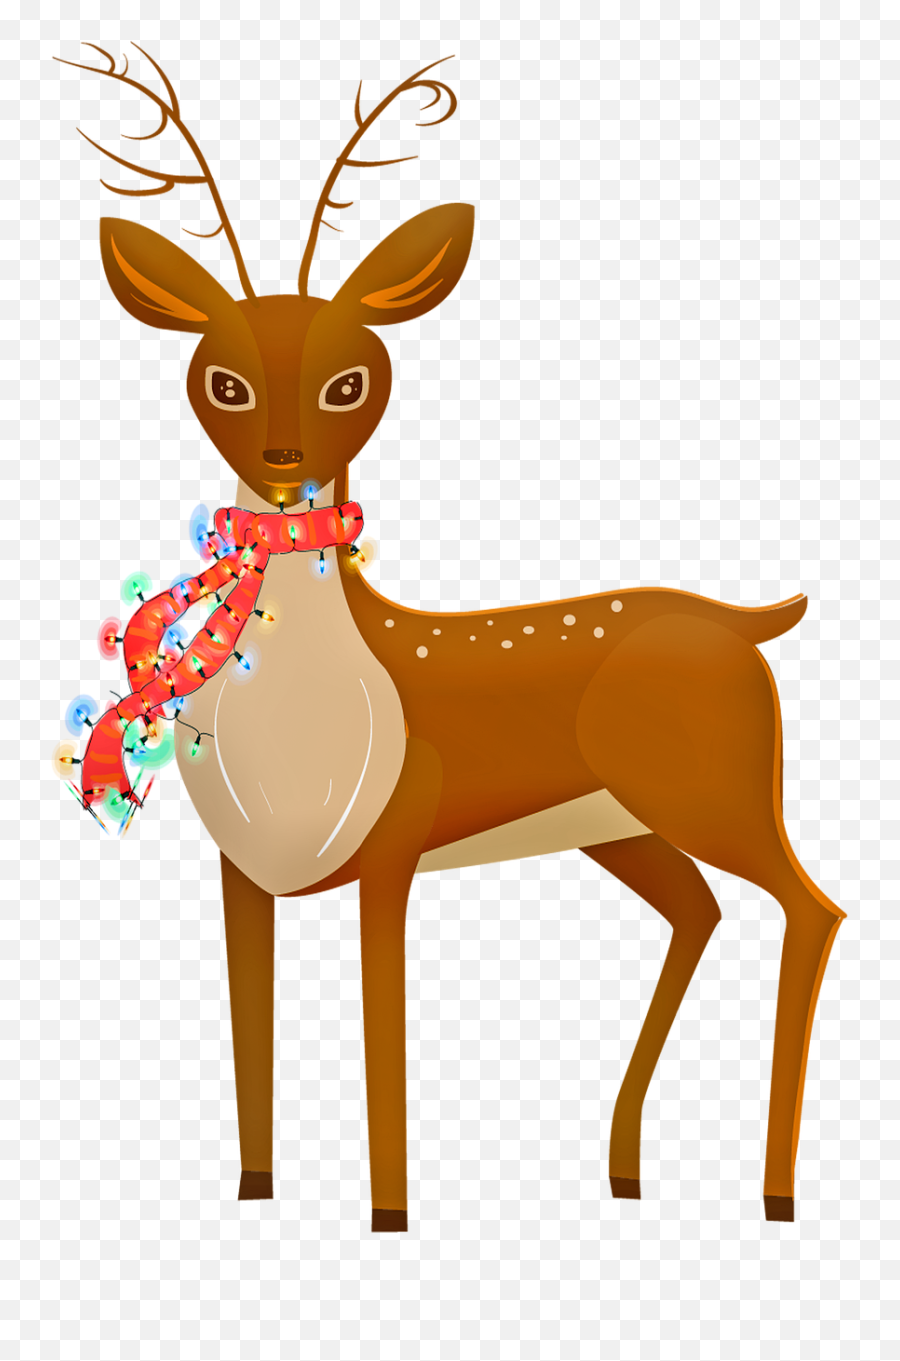 Reindeer Animal Christmas Lights - Free Image On Pixabay Png,Christmas Antlers Png